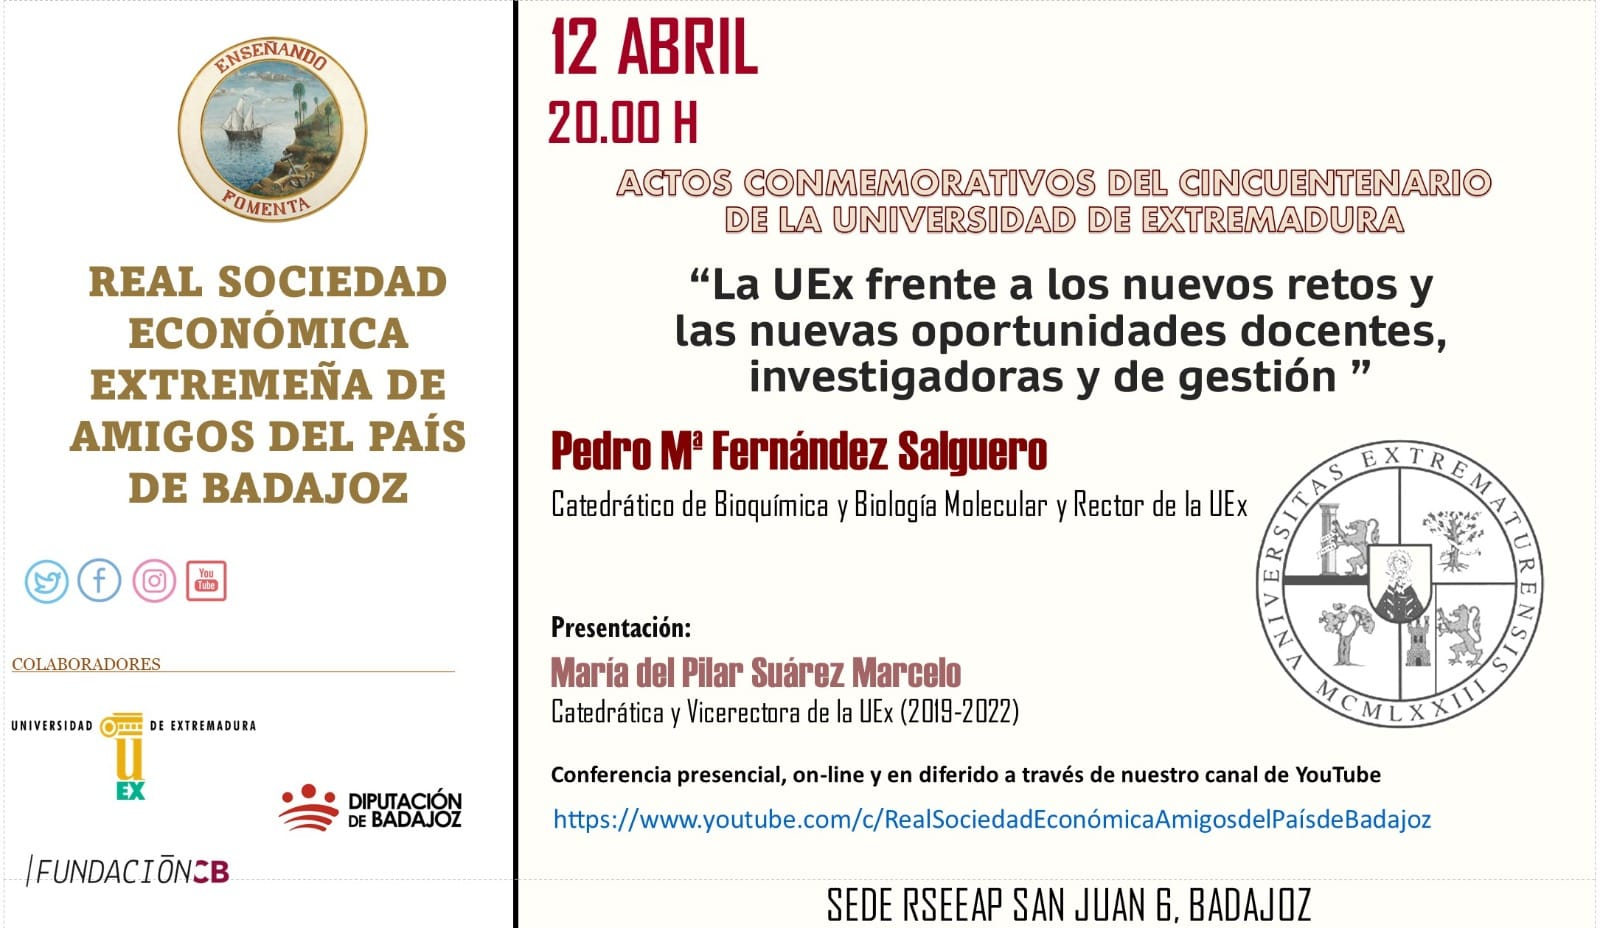 Actos conmemorativos del cincuentenario de la Universidad de Extremadura